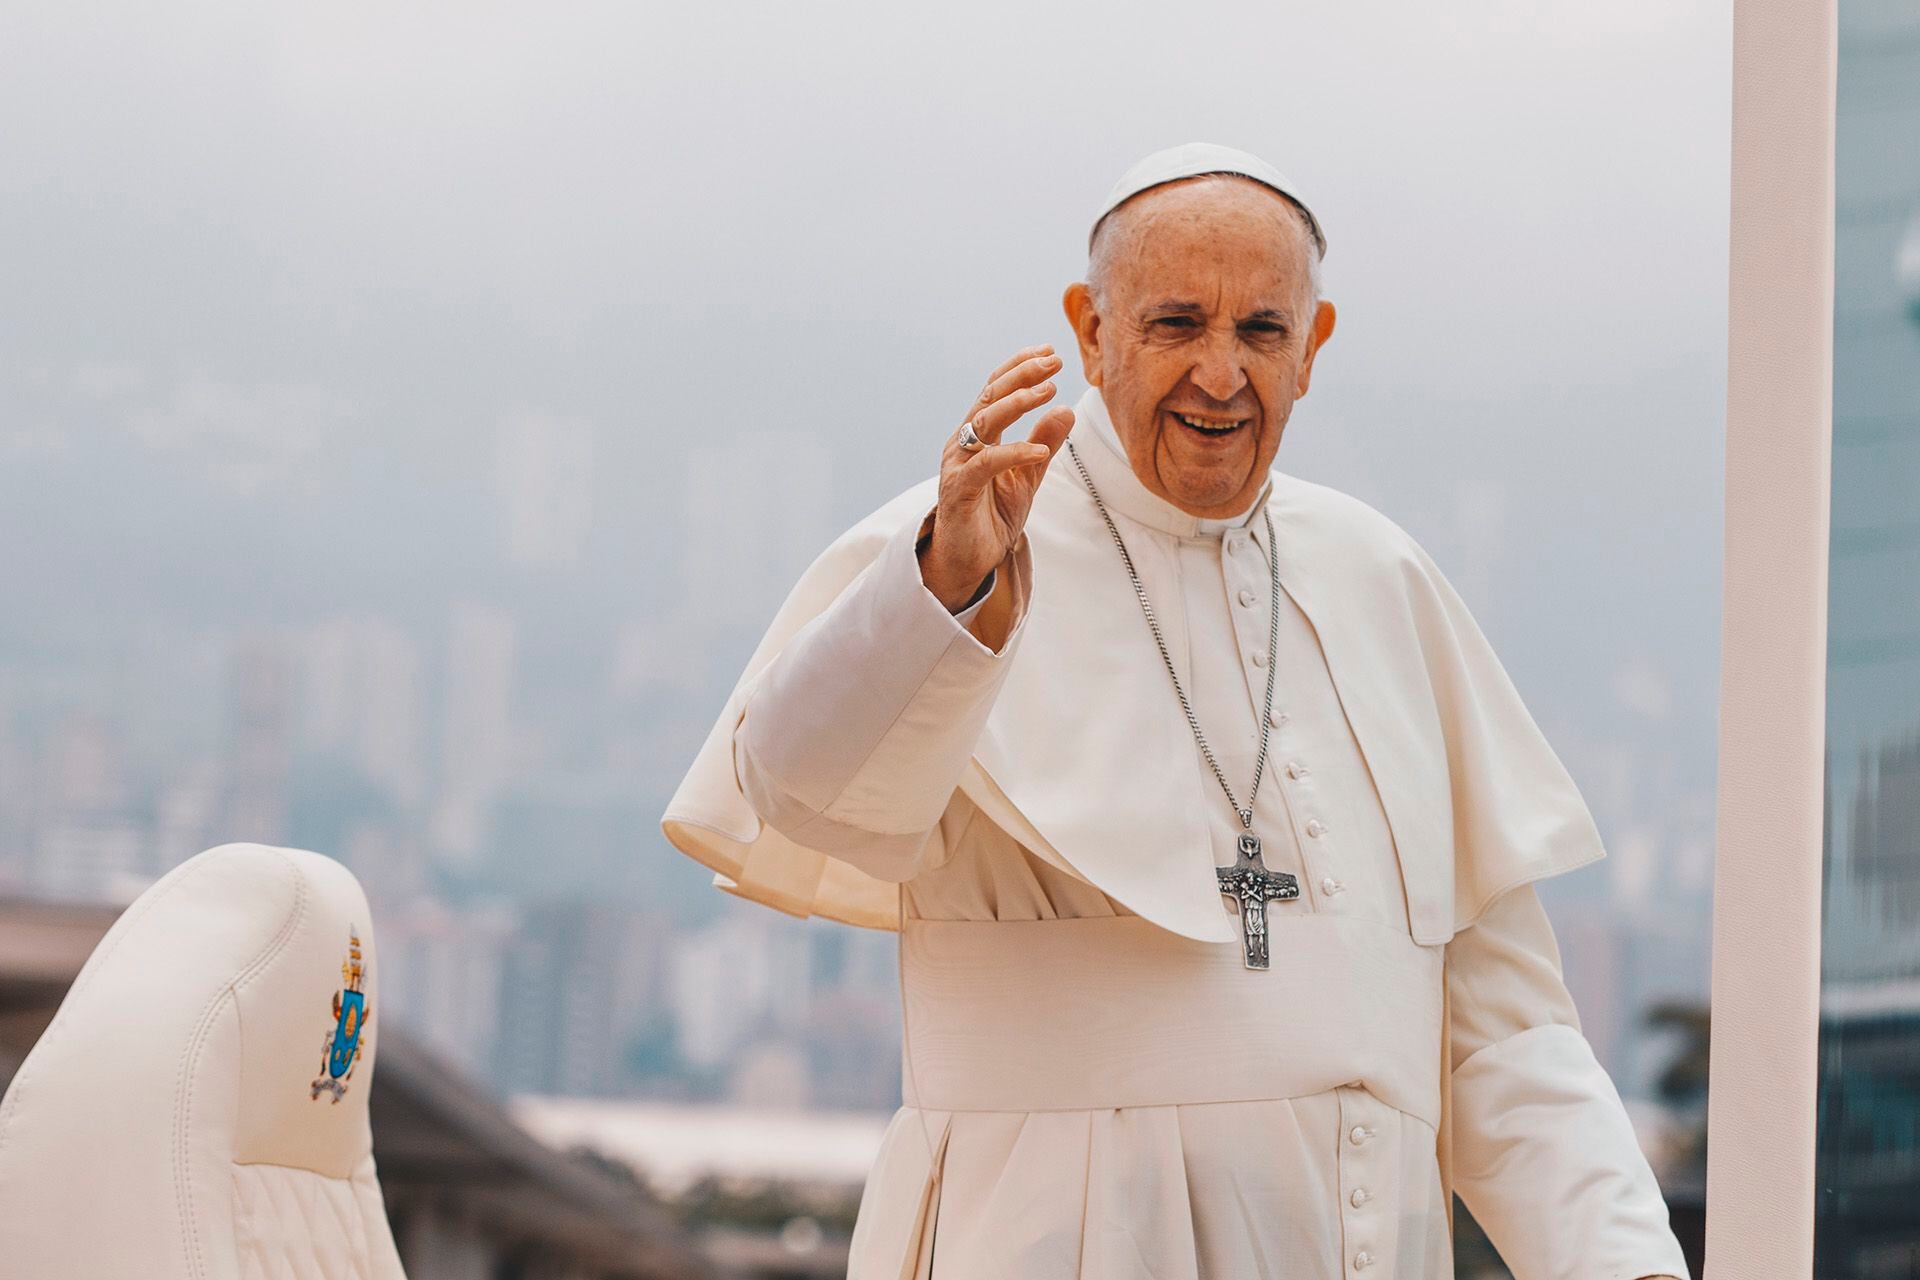 El Papa Francisco se conectará a las 11 con la comunidad de Scholas Ocurrente, en el Barrio 31